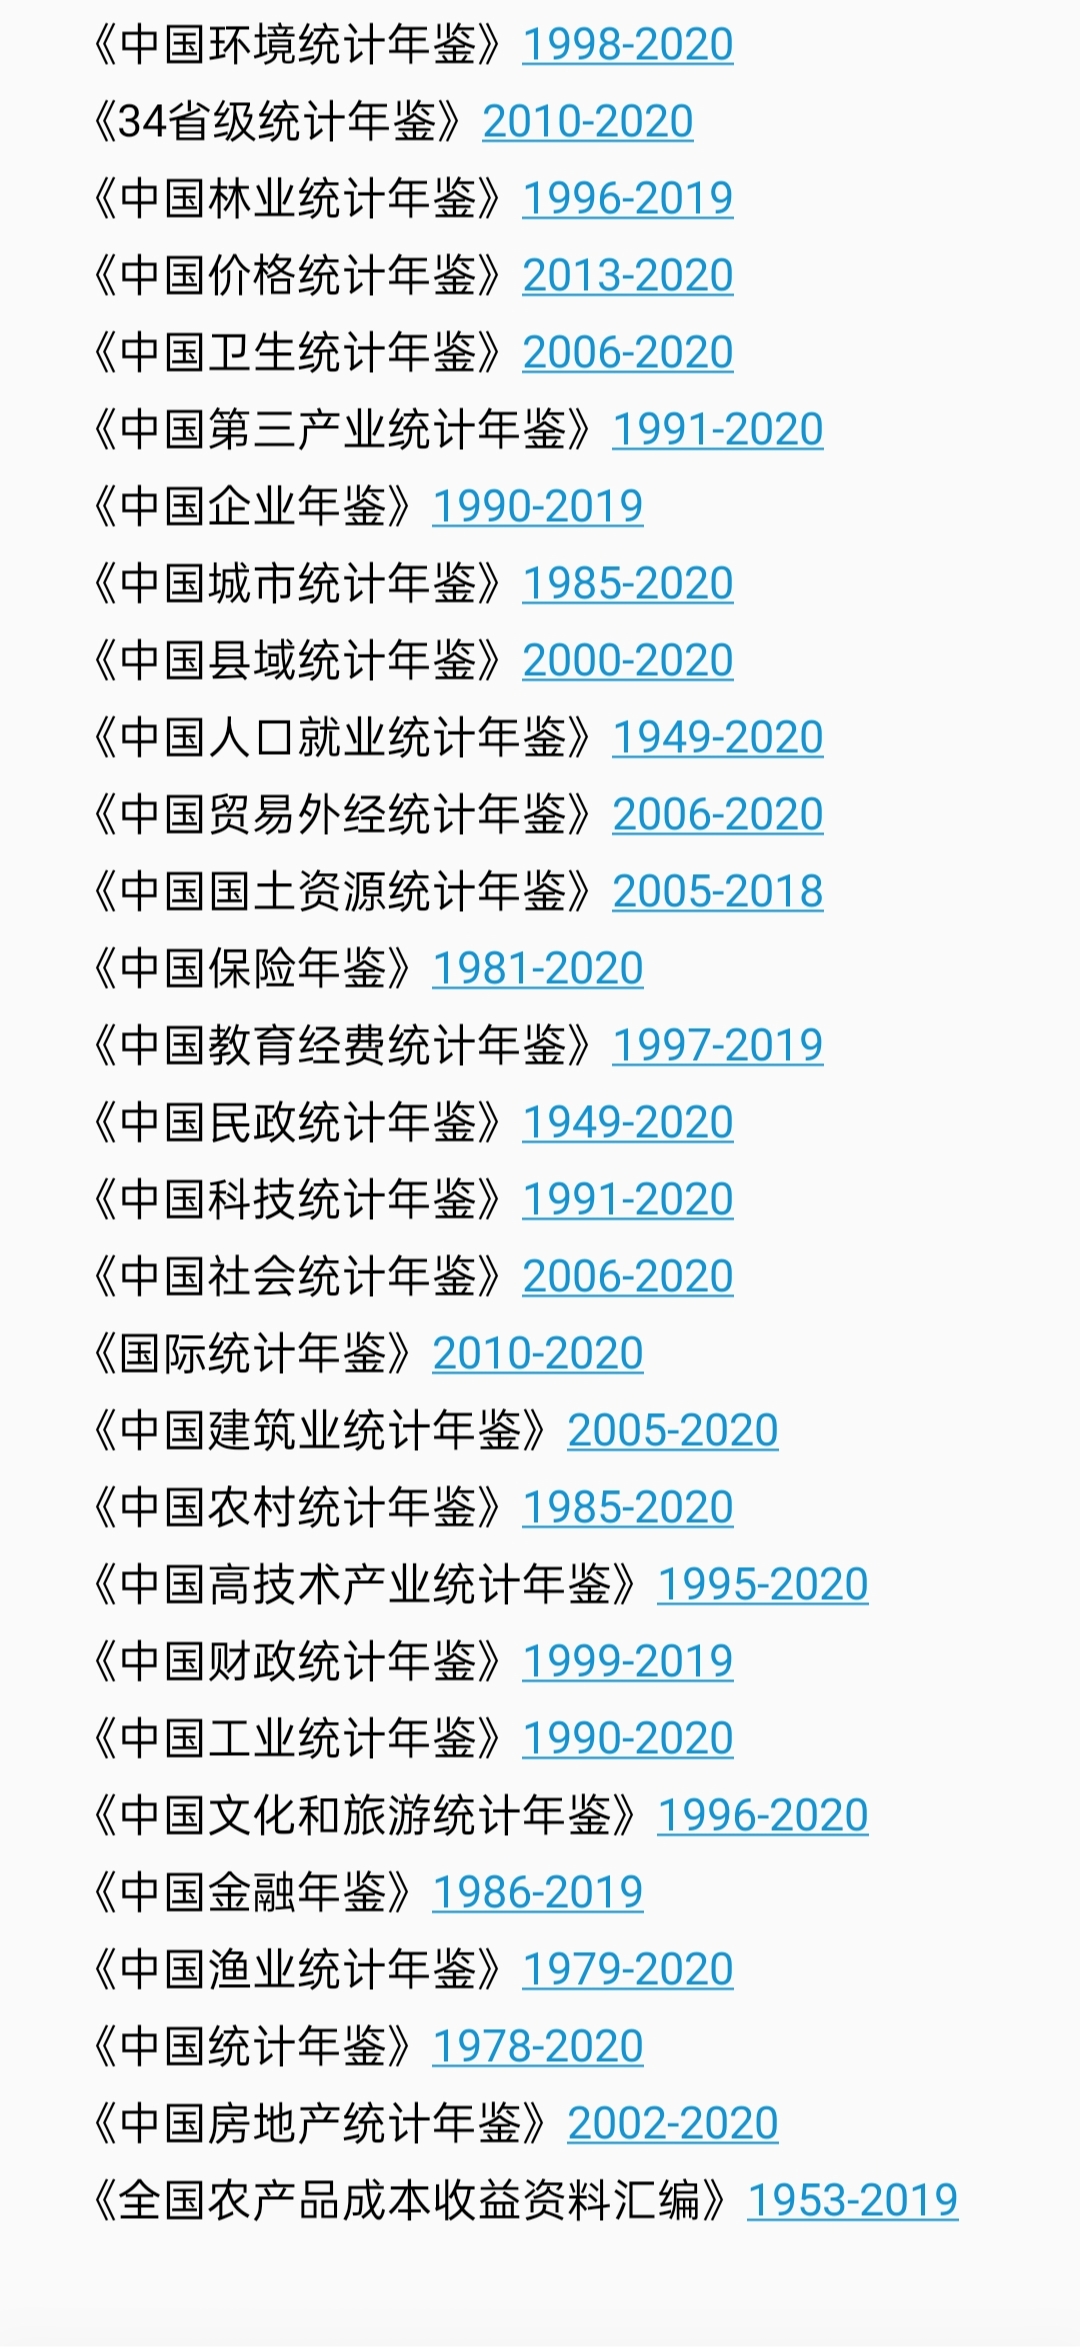 日常】《中国统计年鉴》与《中国金融年鉴》数据表爬虫（附1985-2020 